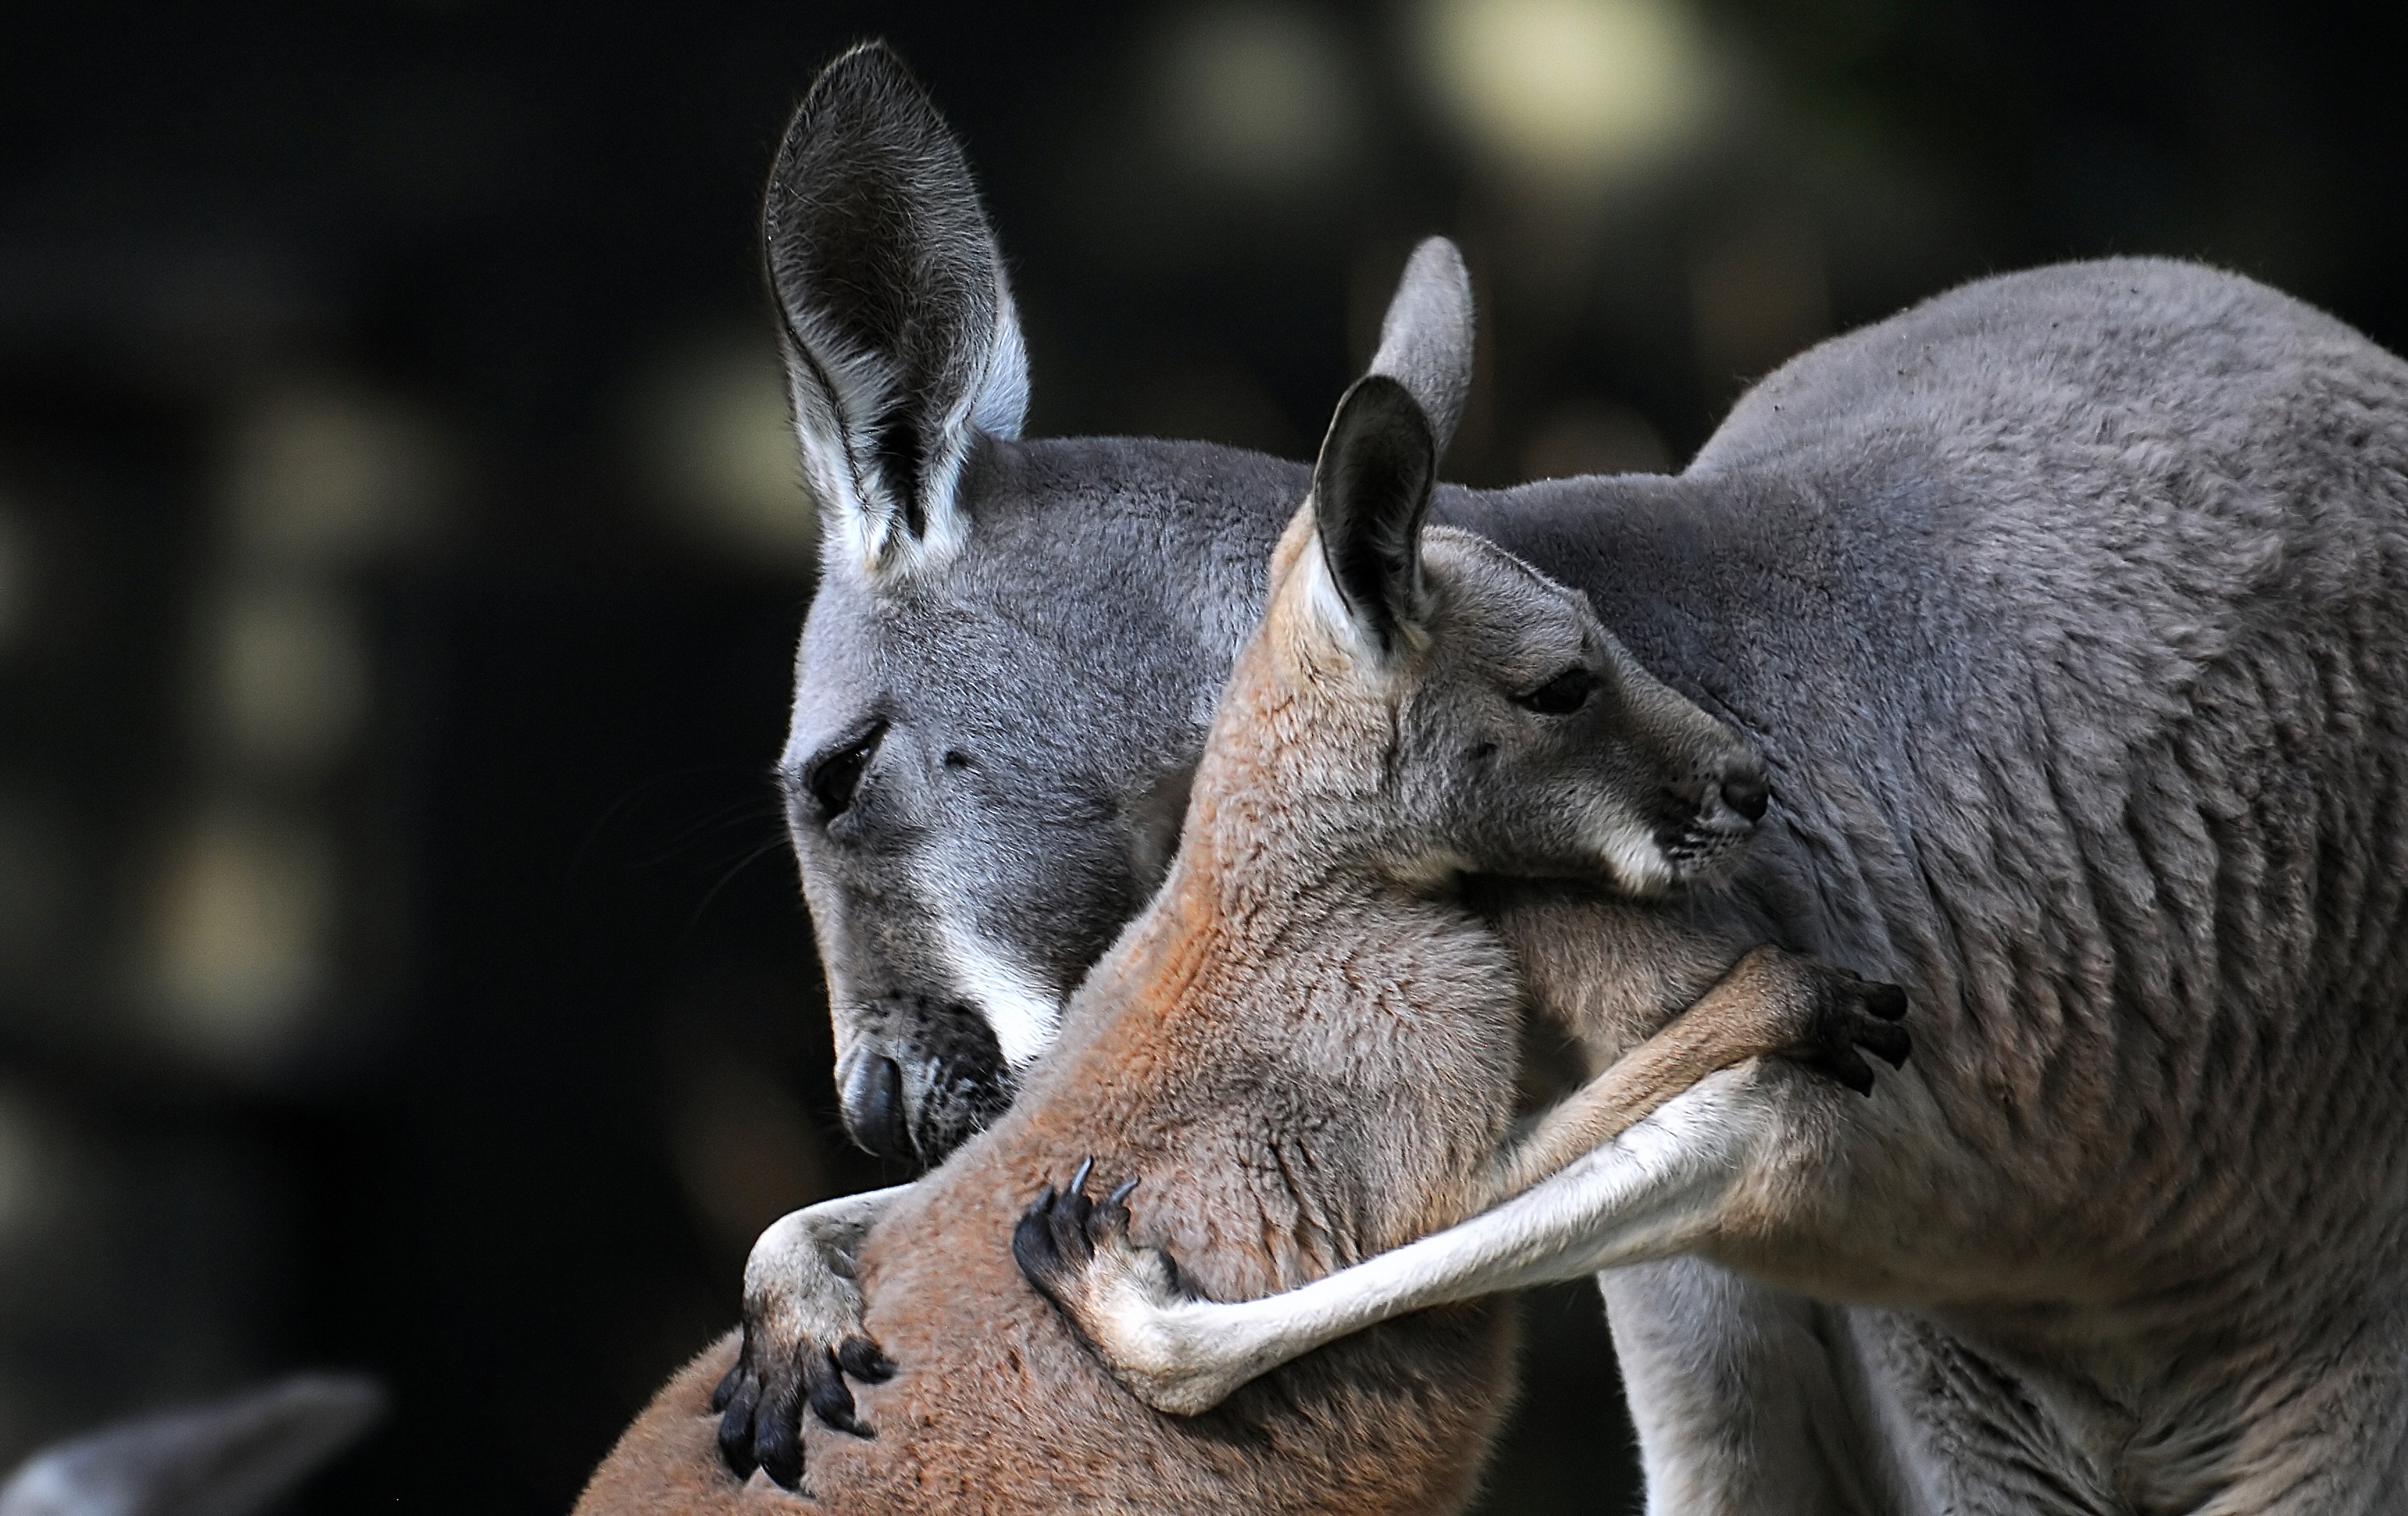 Kangaroo Wallpaper Pictures Image